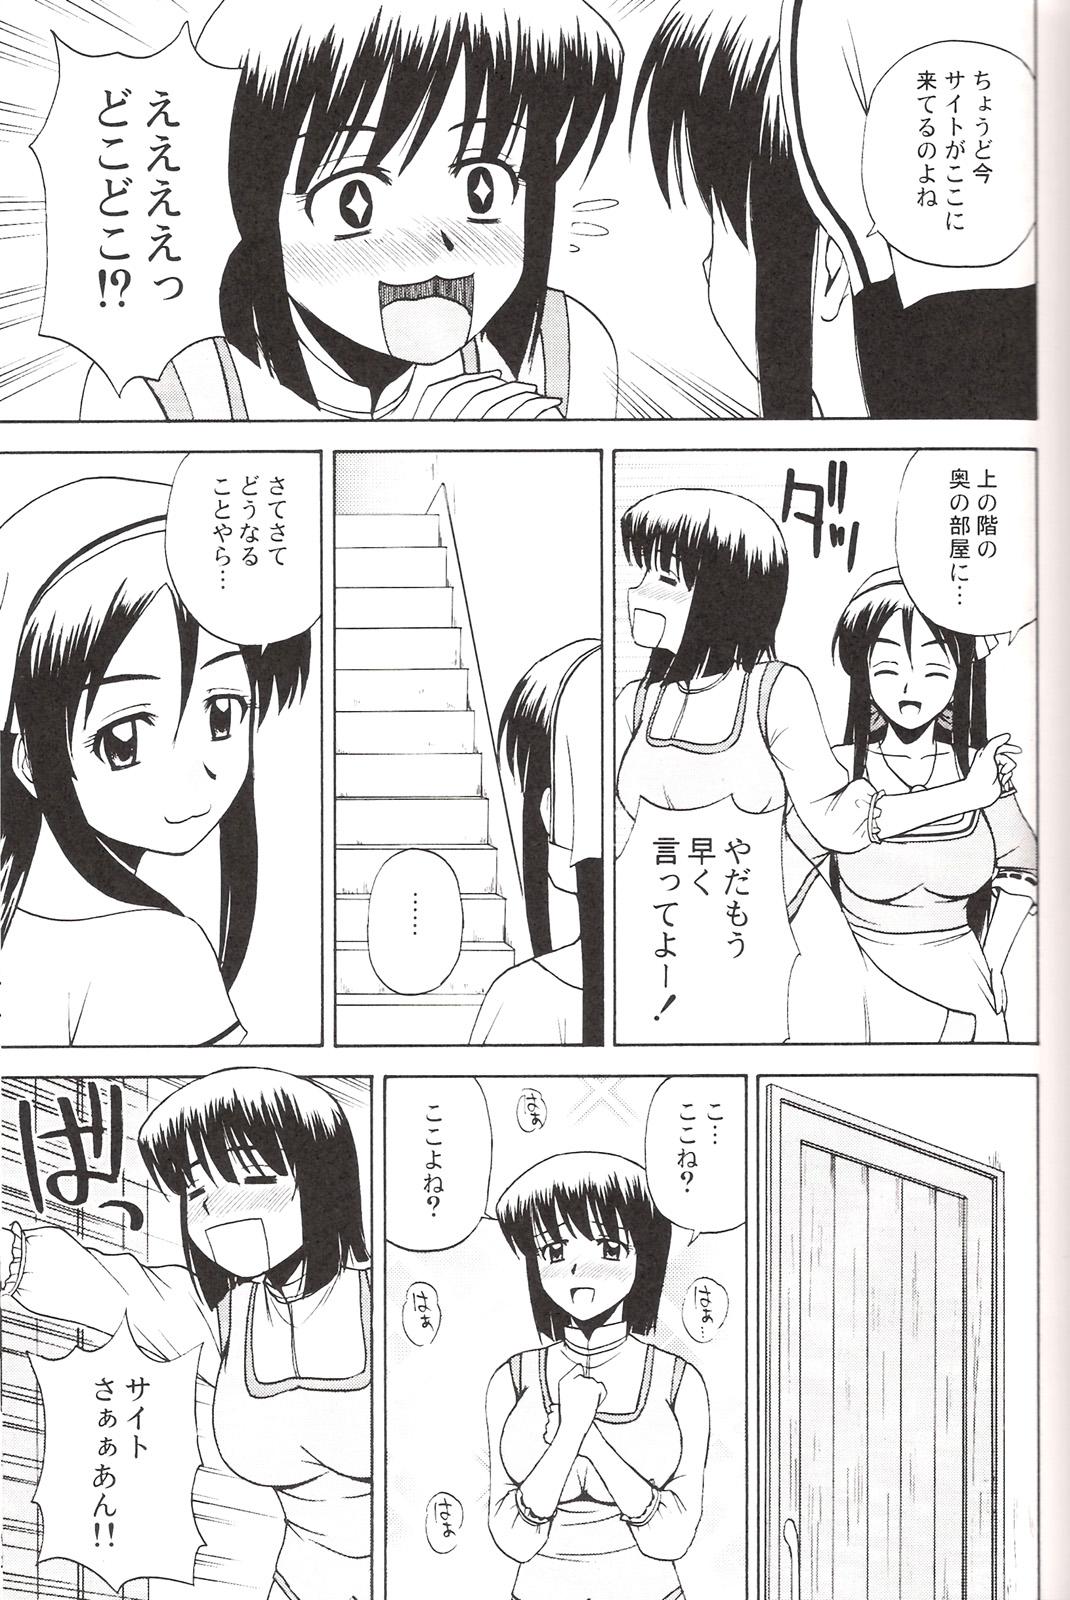 Lover Le beau maitre 3 - Zero no tsukaima Petite Teenager - Page 10